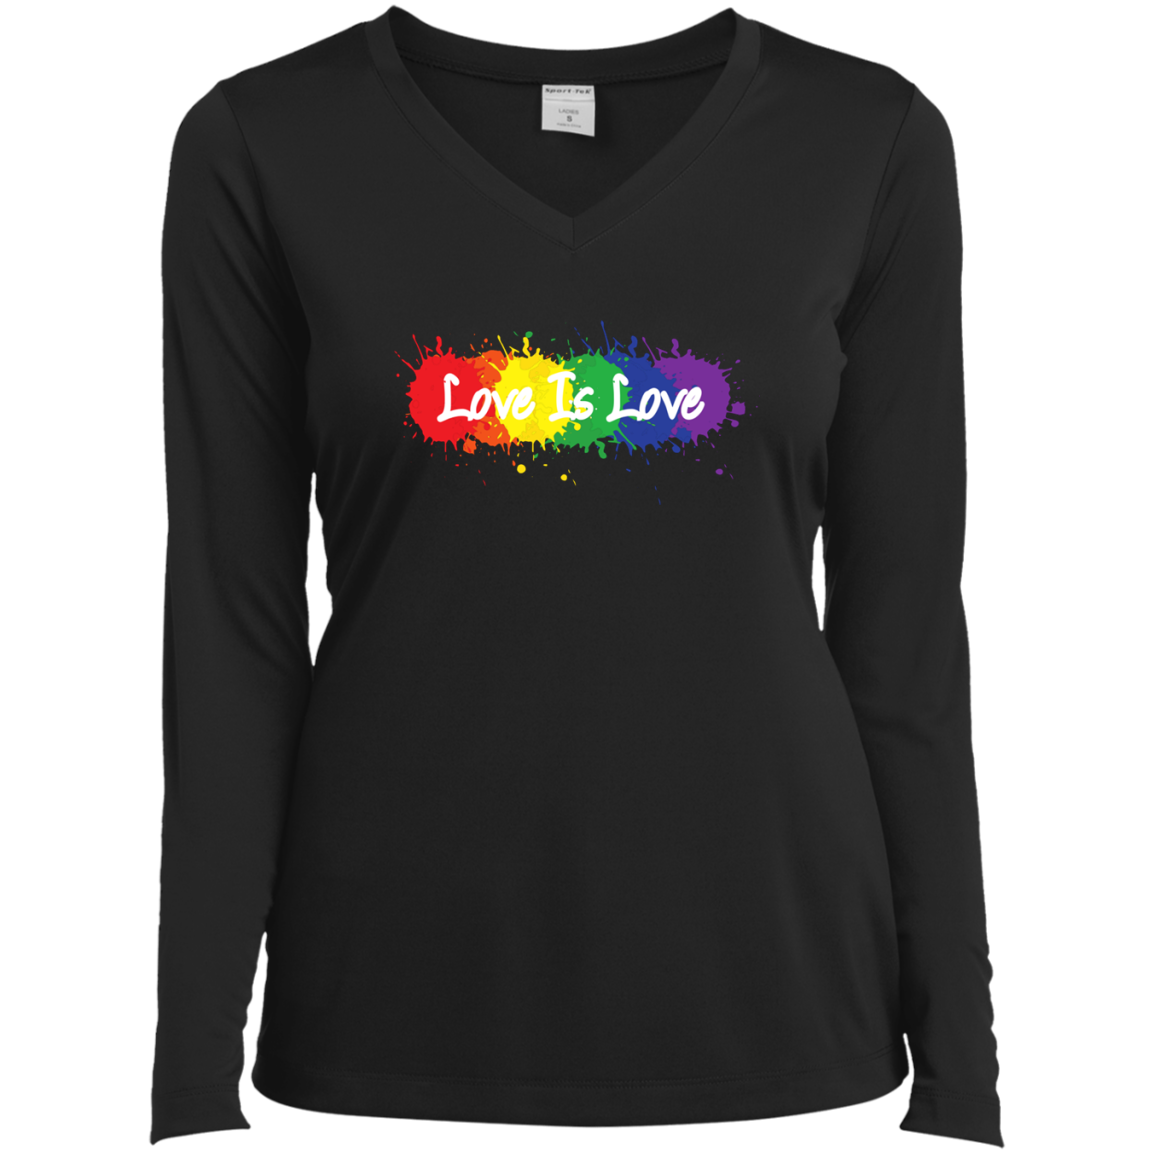  "Love is Love" black full sleevs v-neck T Shirt for women LGBT Pride Equality tshirt for women